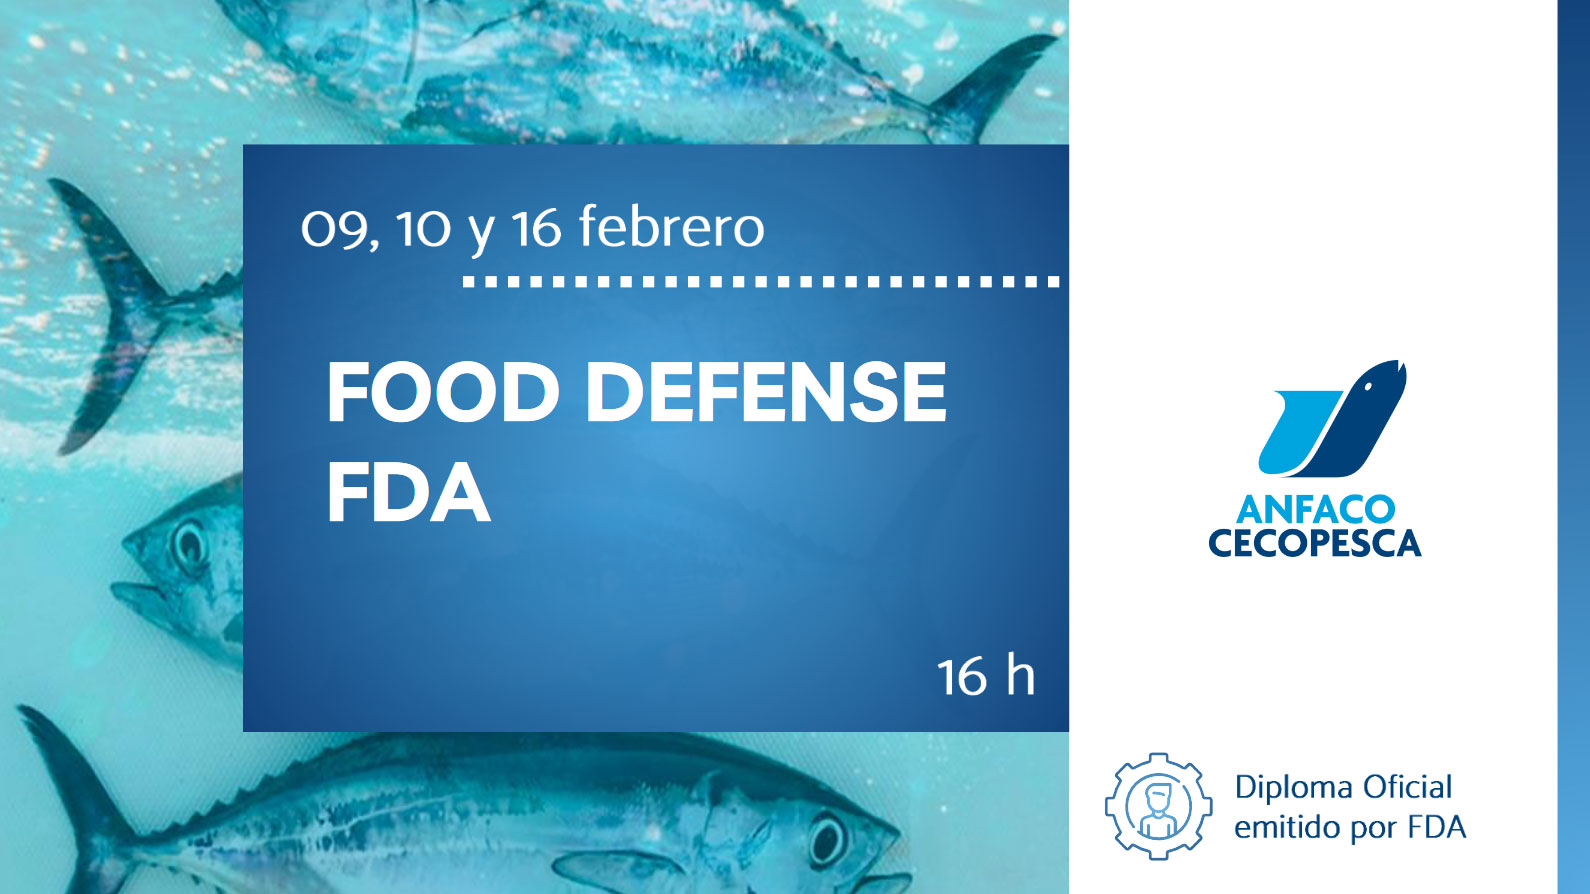 Food Defense FDA